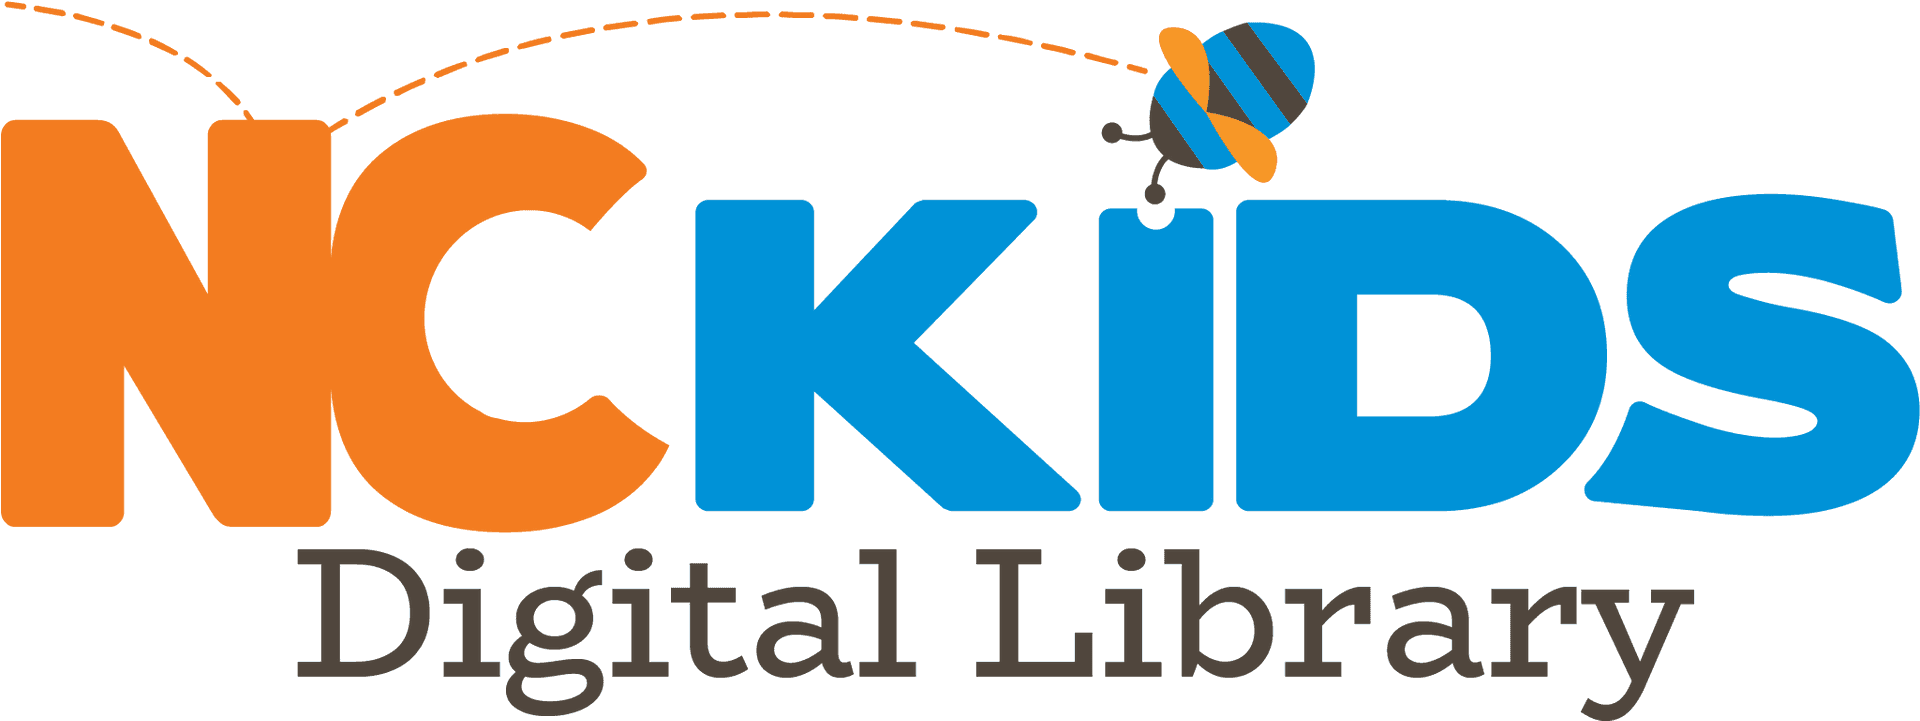 N C Kids Digital Library Logo PNG